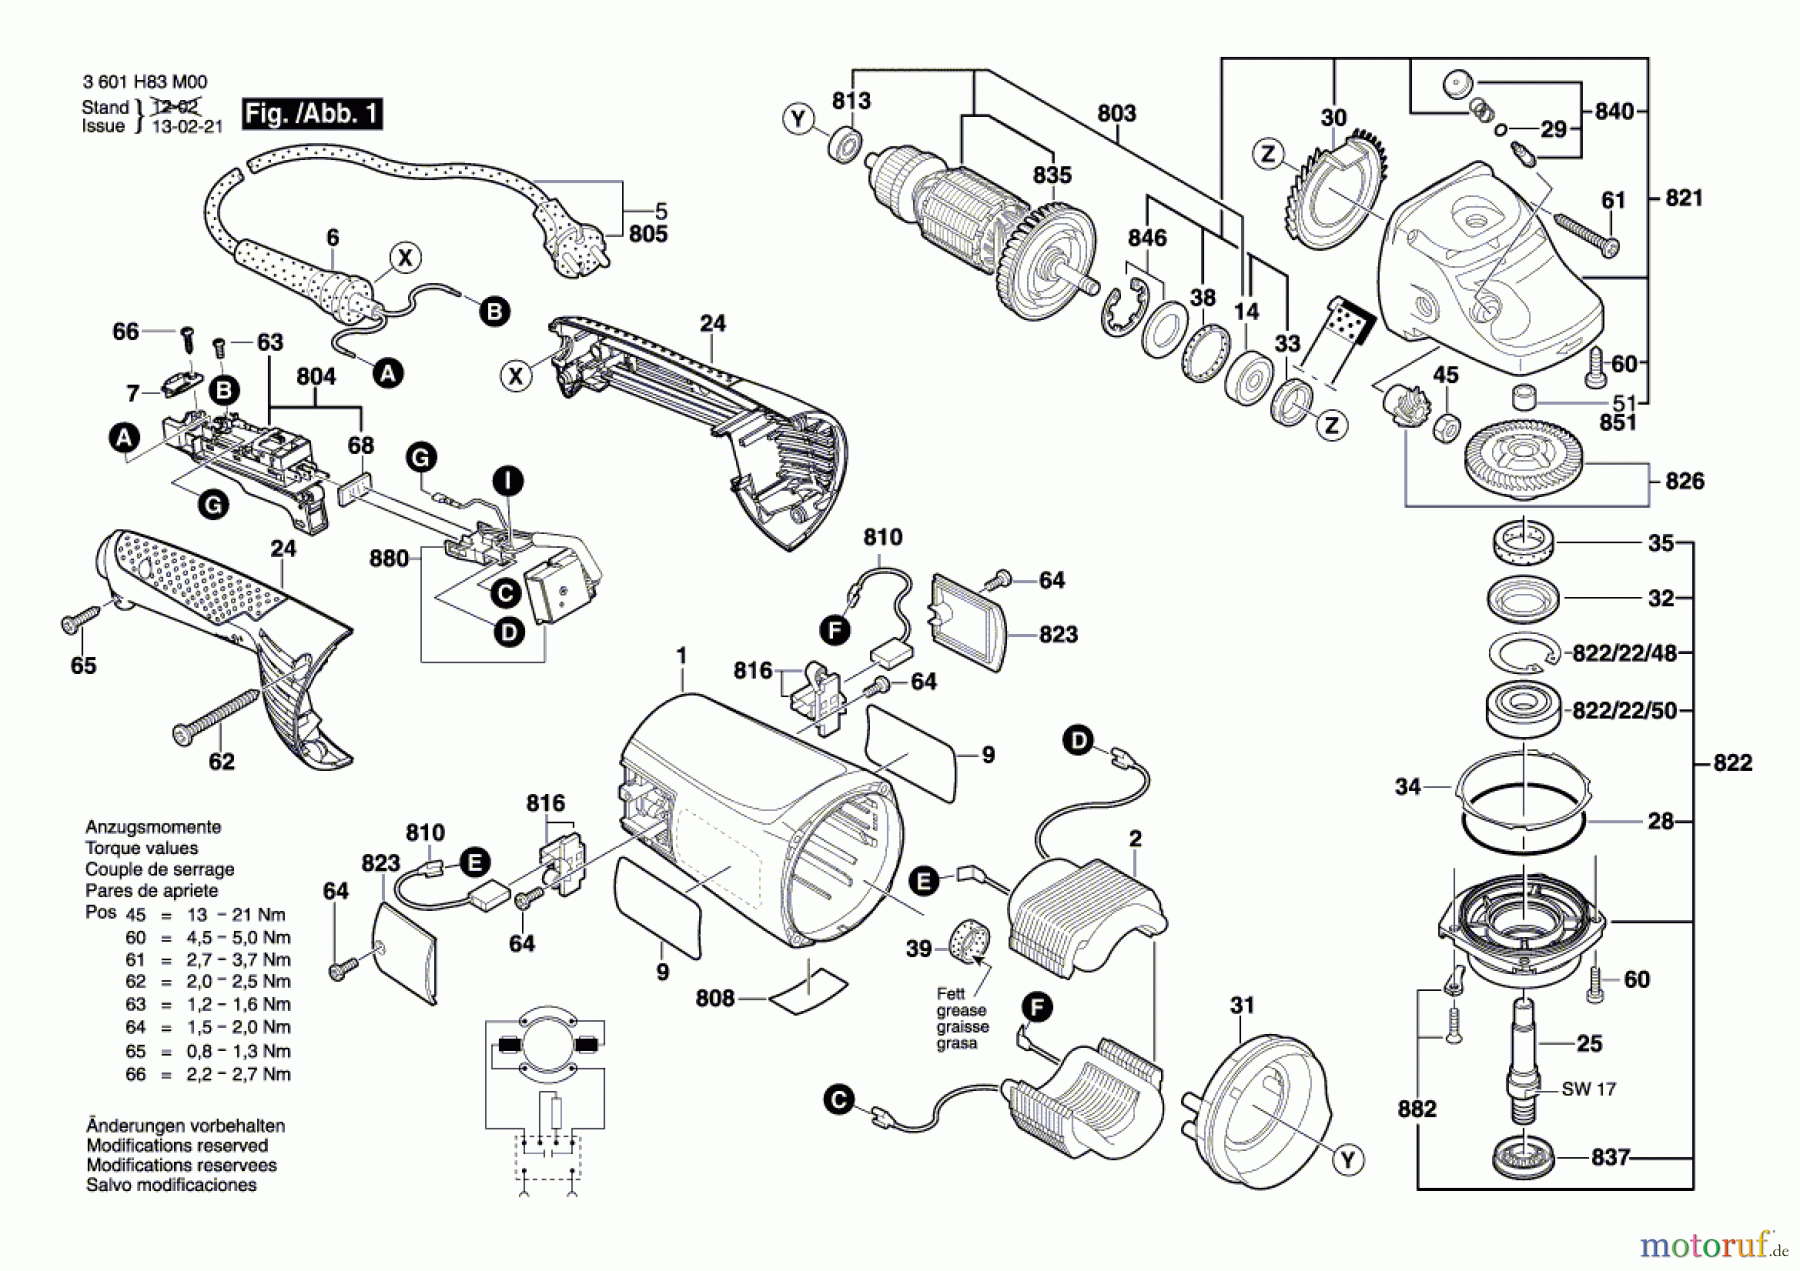  Bosch Werkzeug Winkelschleifer GWS 24-23 JH Seite 1